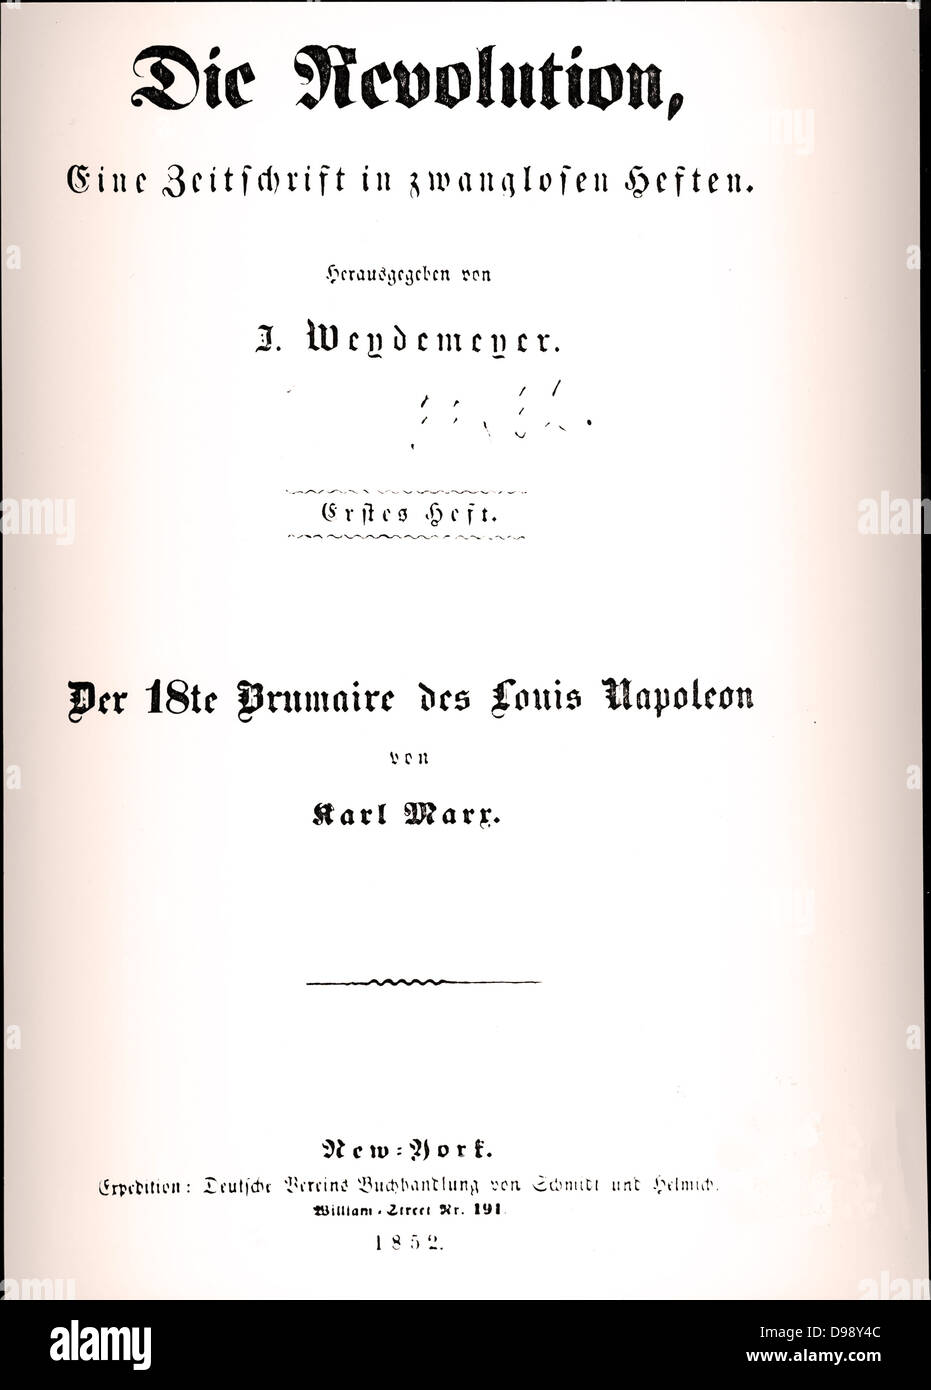 Título de la página del libro de Karl Marx revolución 'Die 1852 Foto de stock